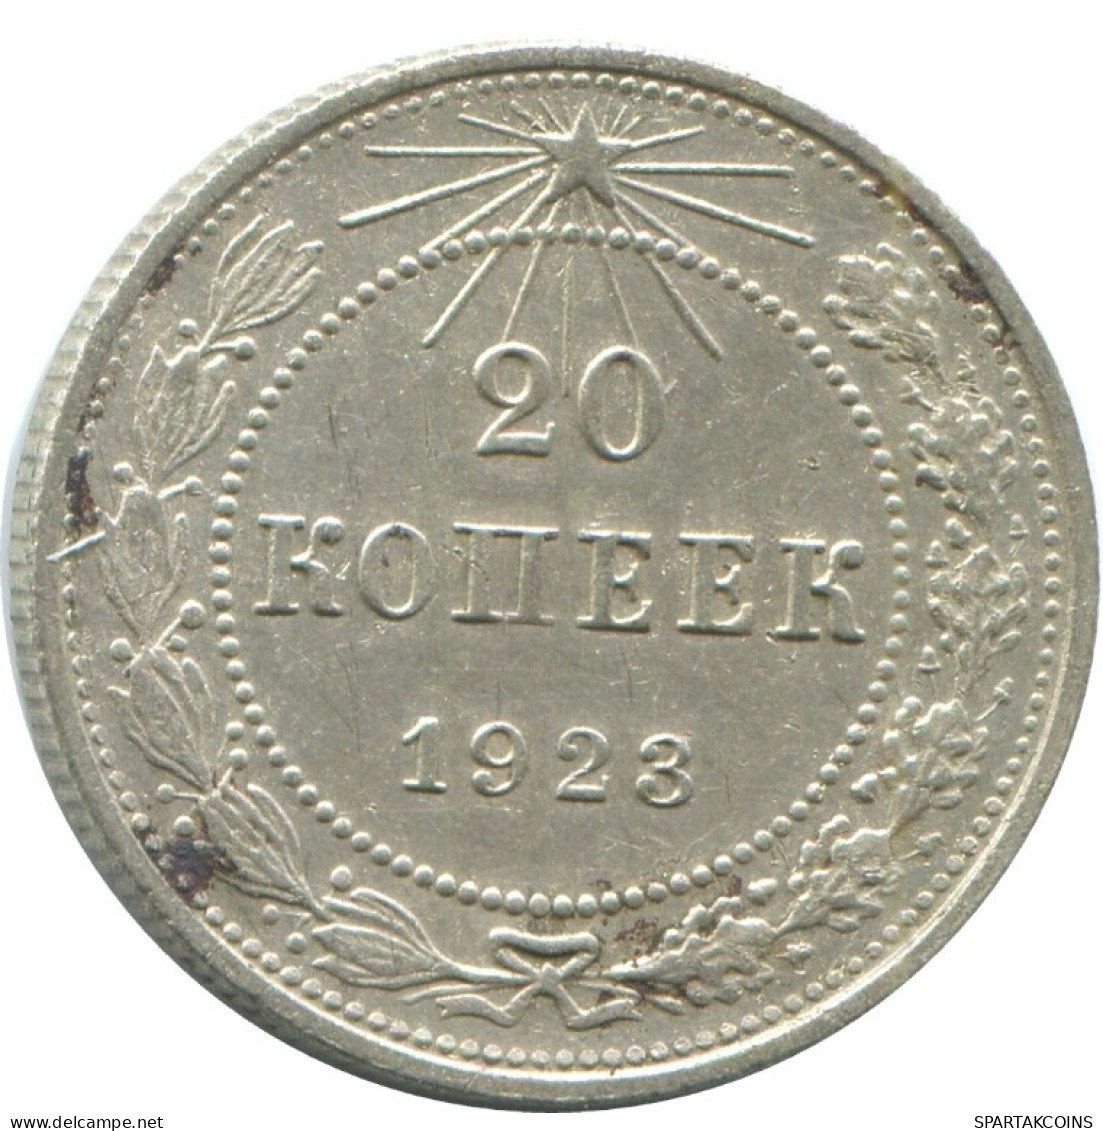 20 KOPEKS 1923 RUSIA RUSSIA RSFSR PLATA Moneda HIGH GRADE #AF467.4.E.A - Russland